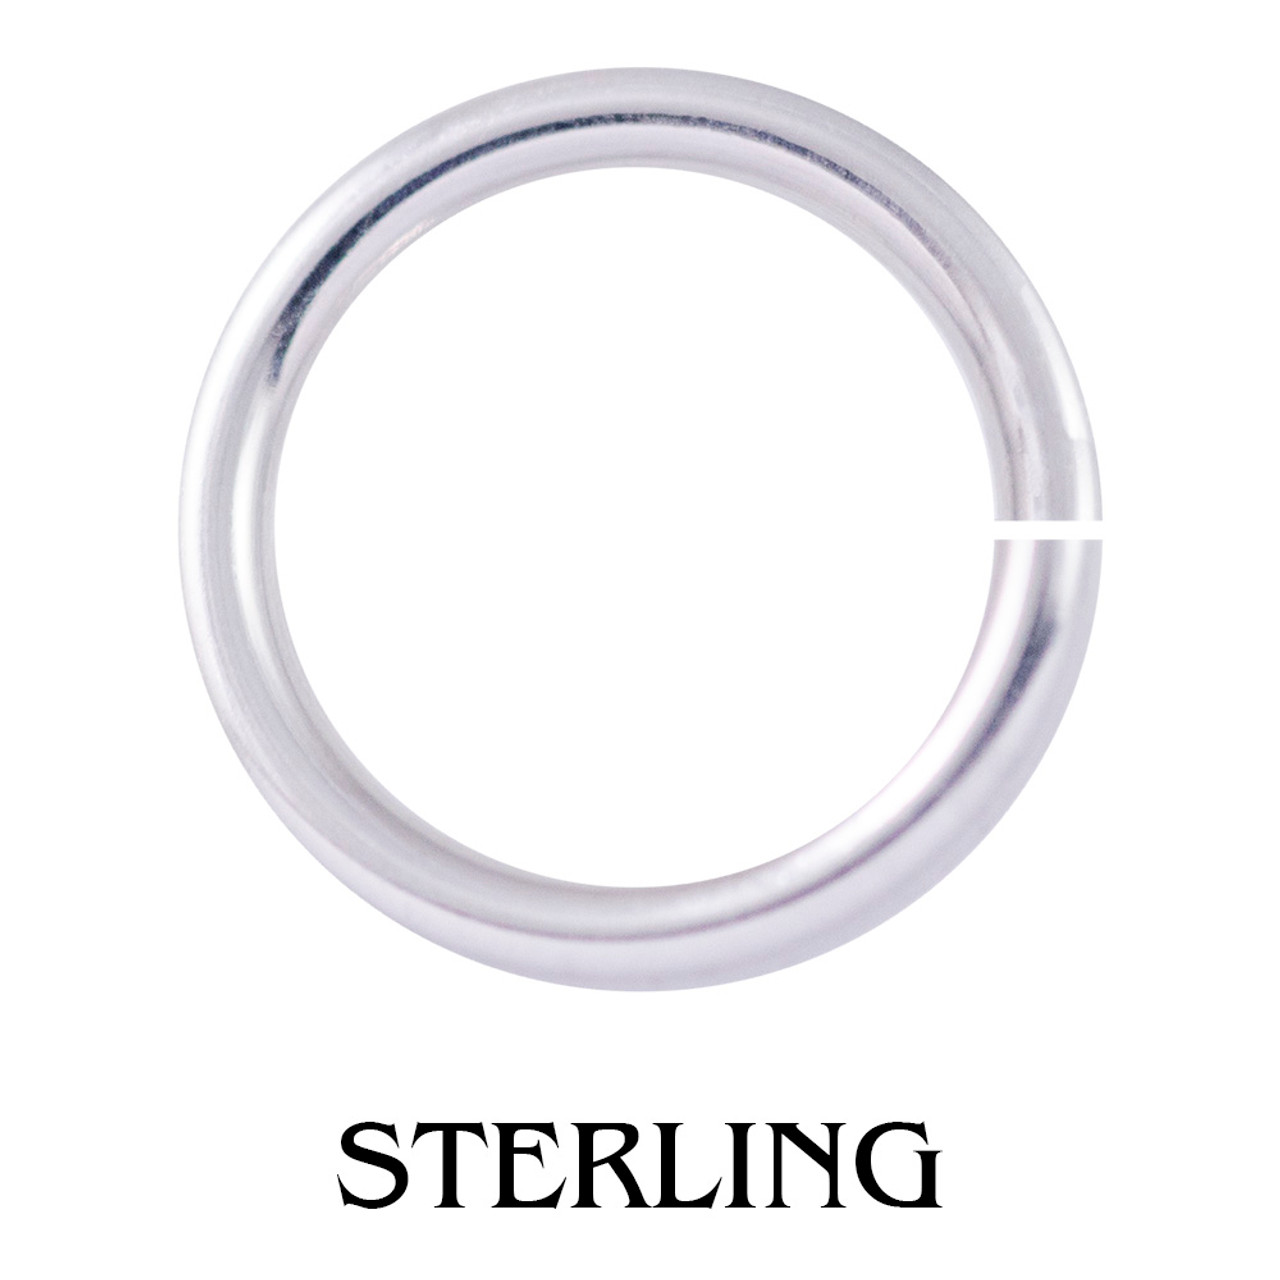 Sterling Silver 4mm 20 gauge Jump Rings